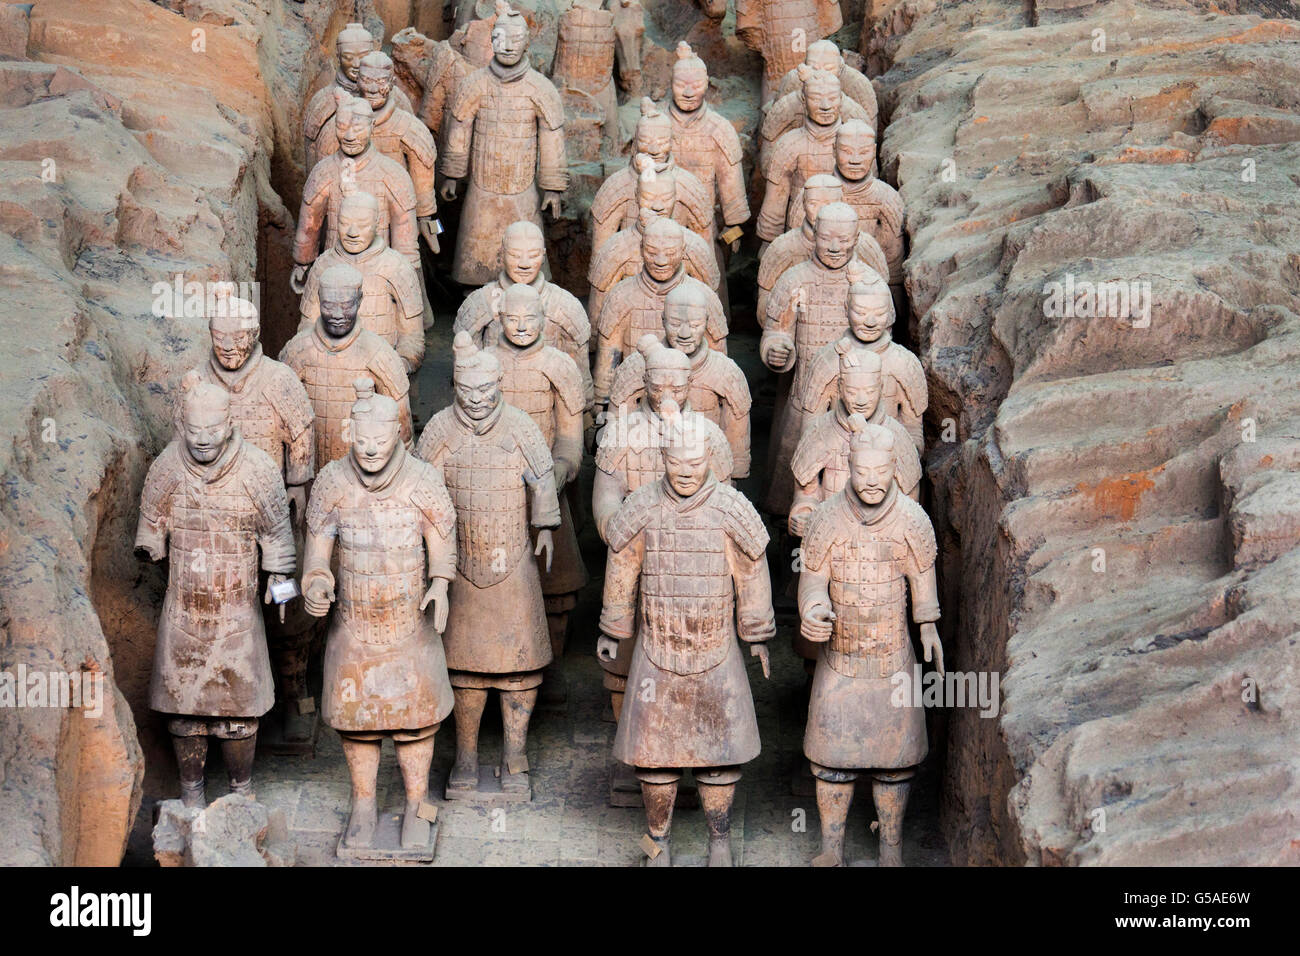 El Ejército de terracota del emperador Qin Shi Huang, distrito de Lintong, Xi'an, provincia de Shaanxi China Foto de stock